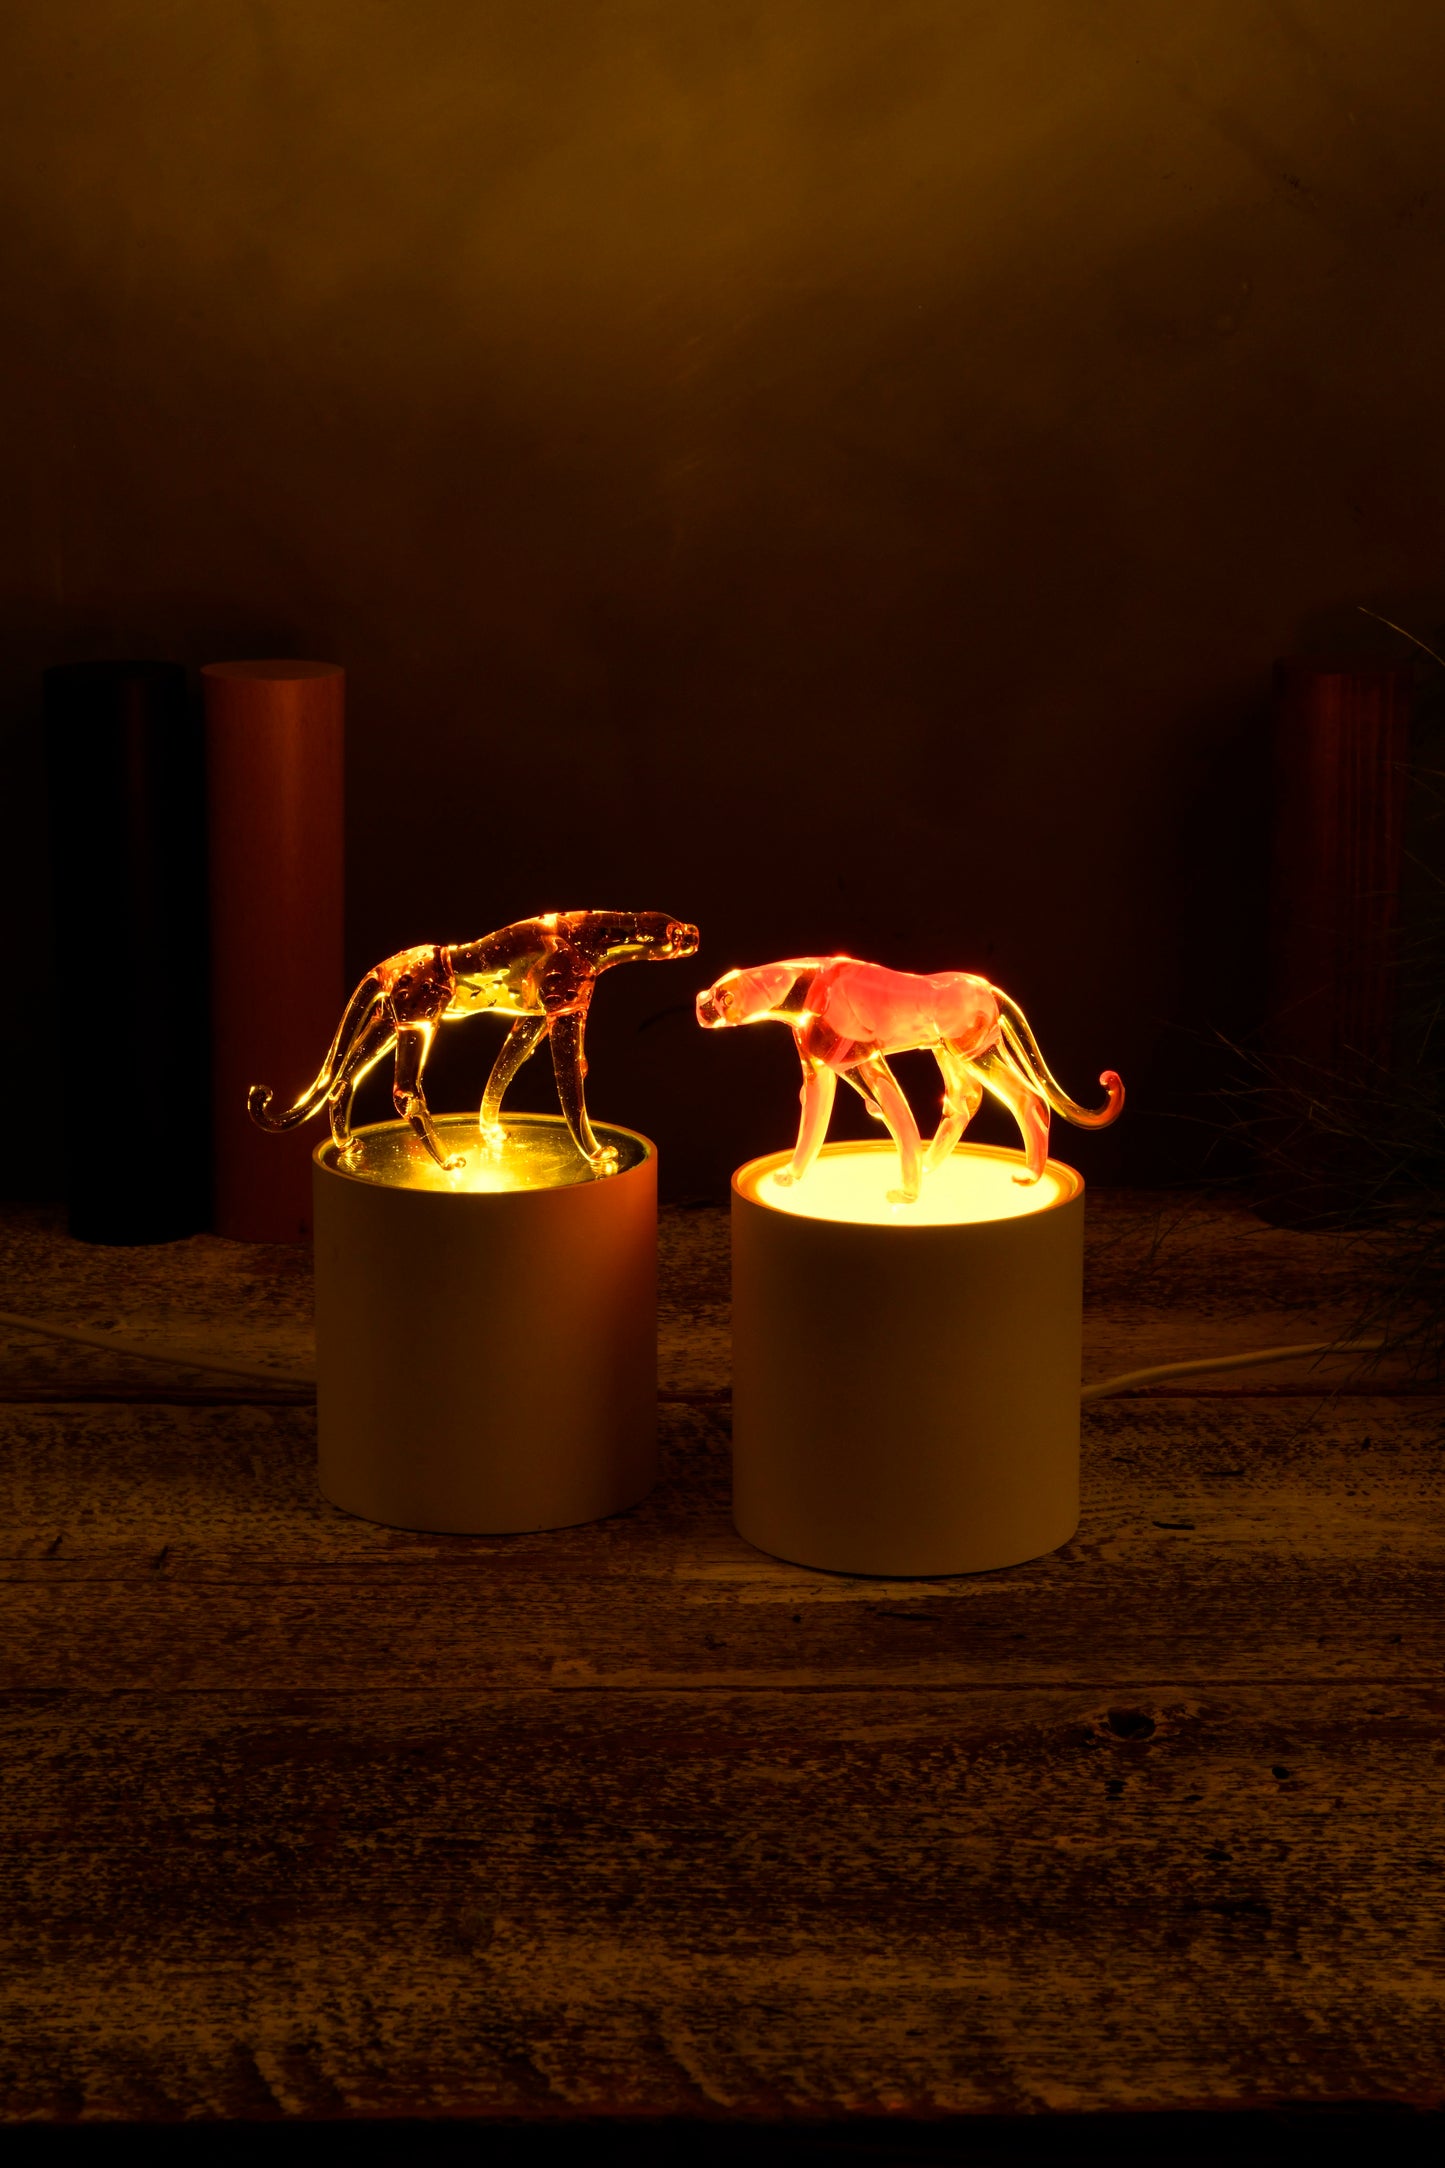 Night Lamp -CHEETAH-Murano Glass